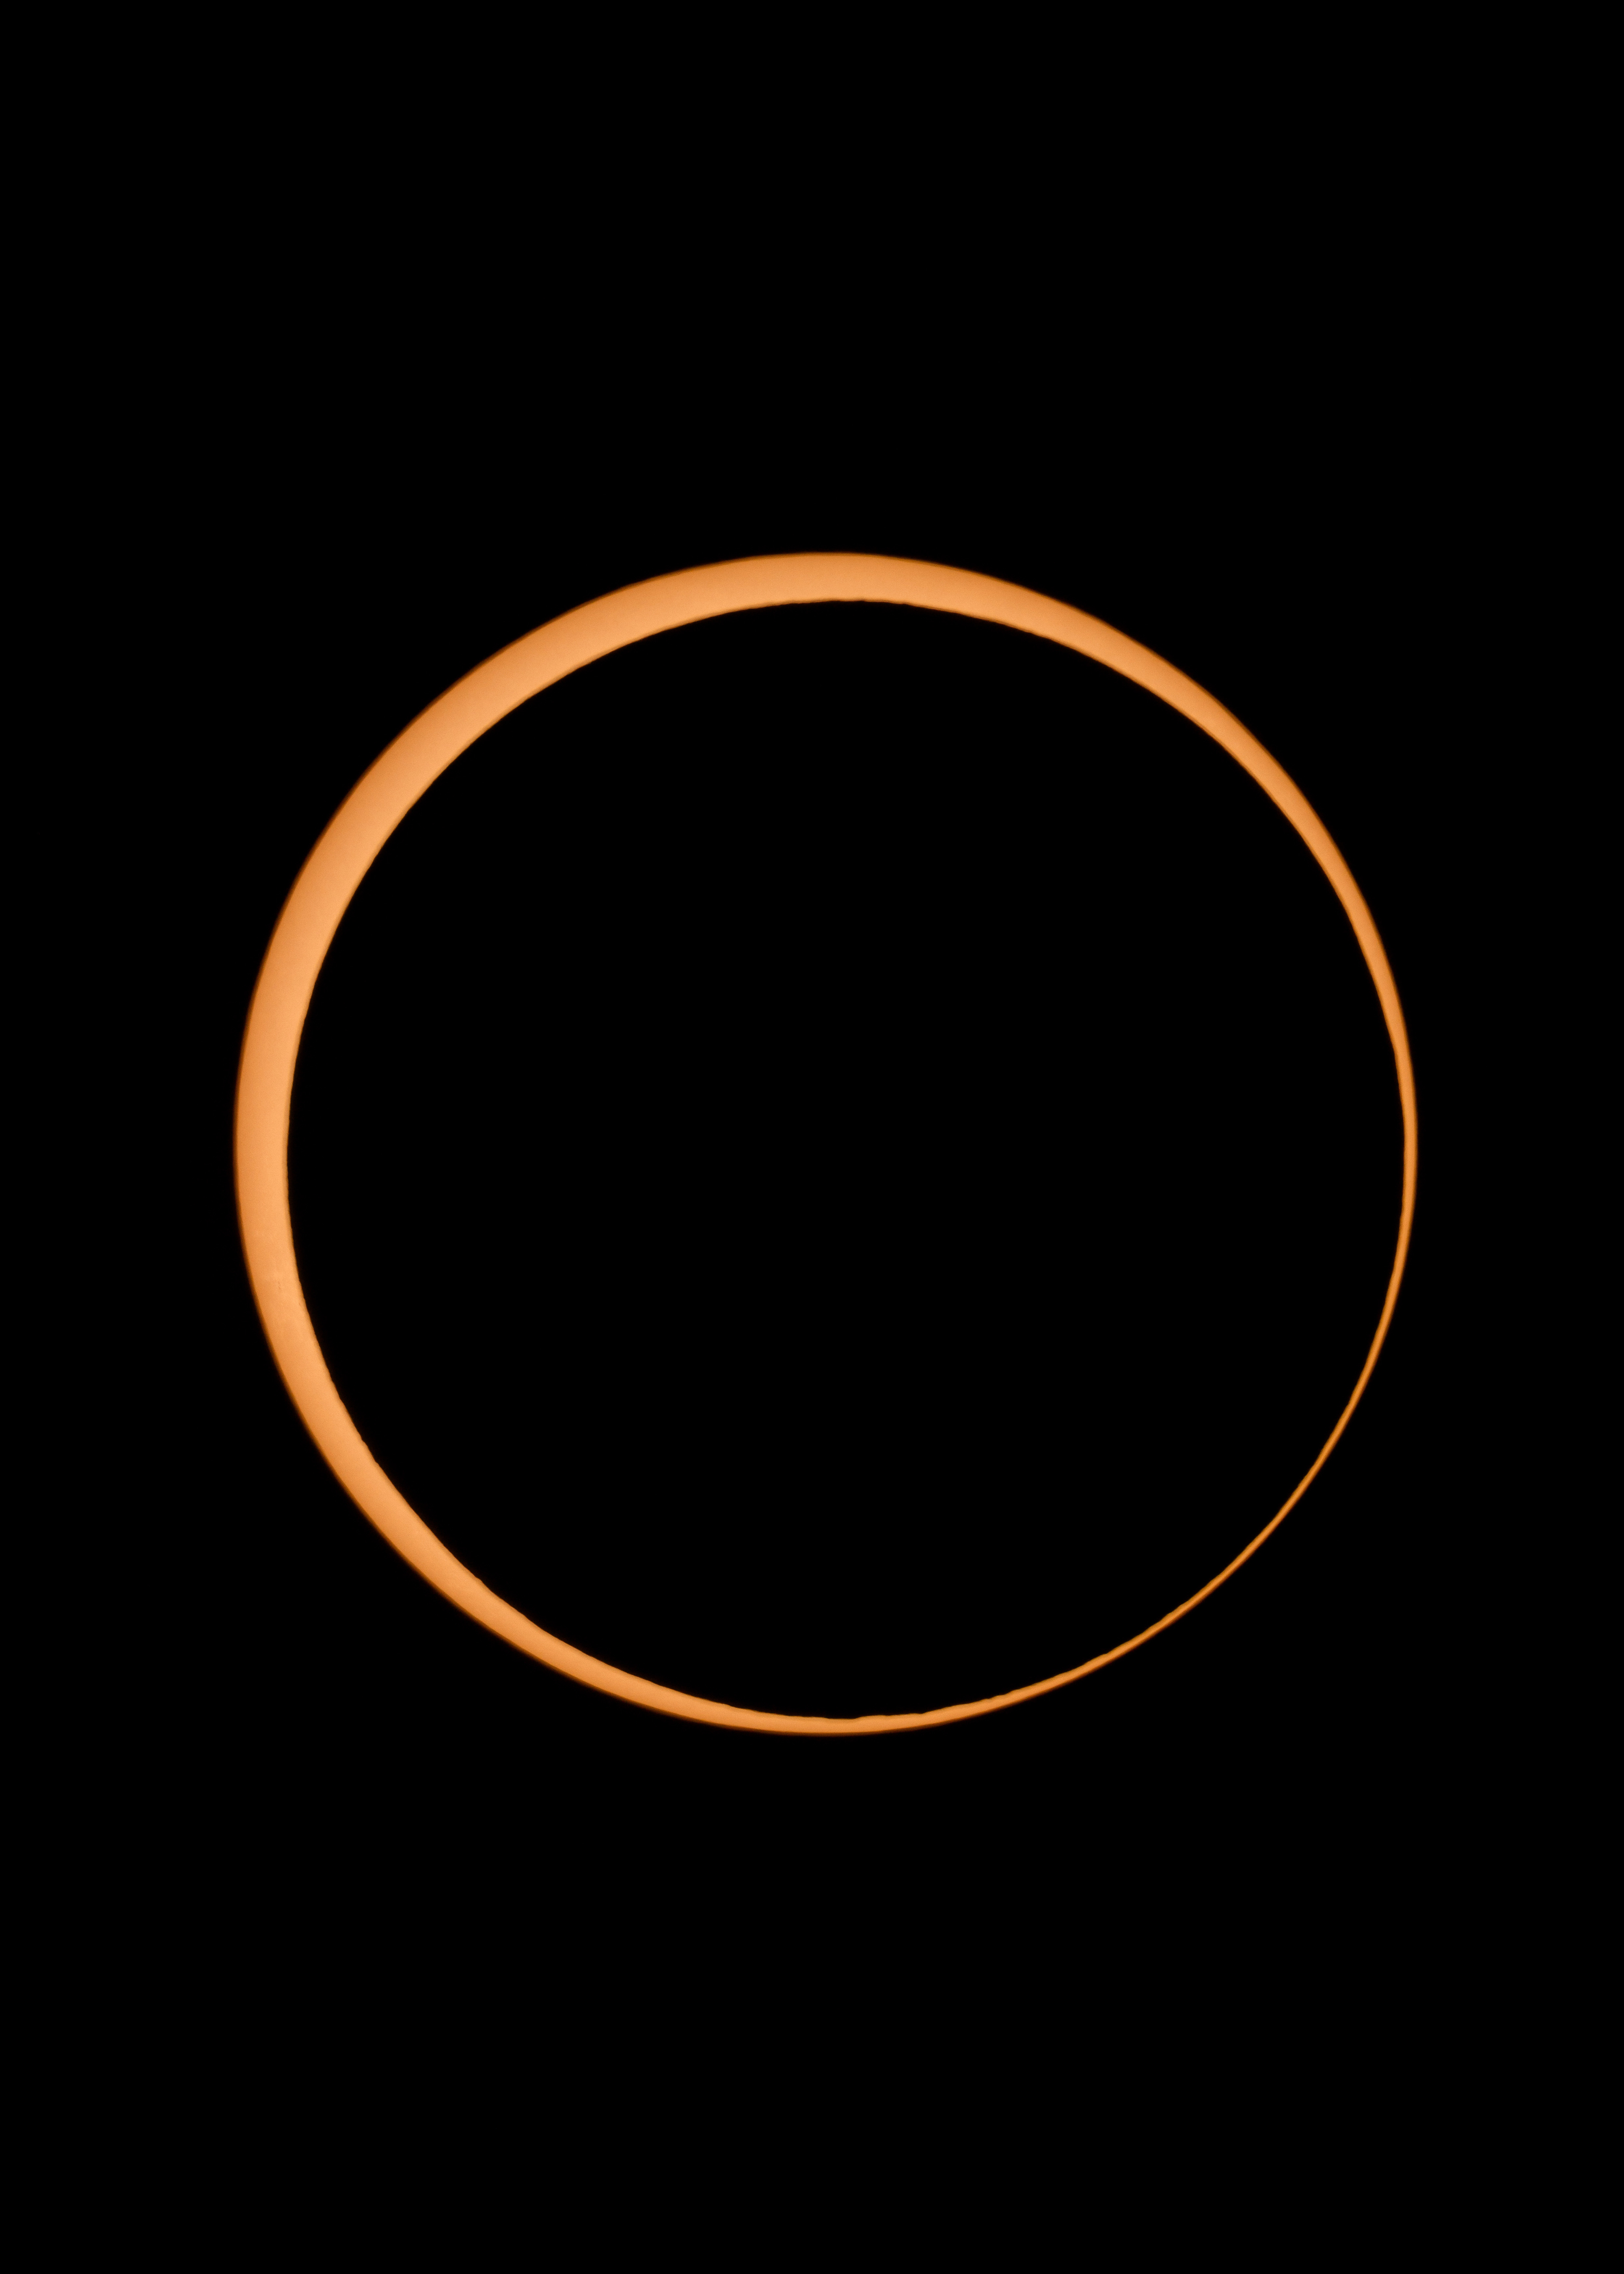 an annular solar eclipse